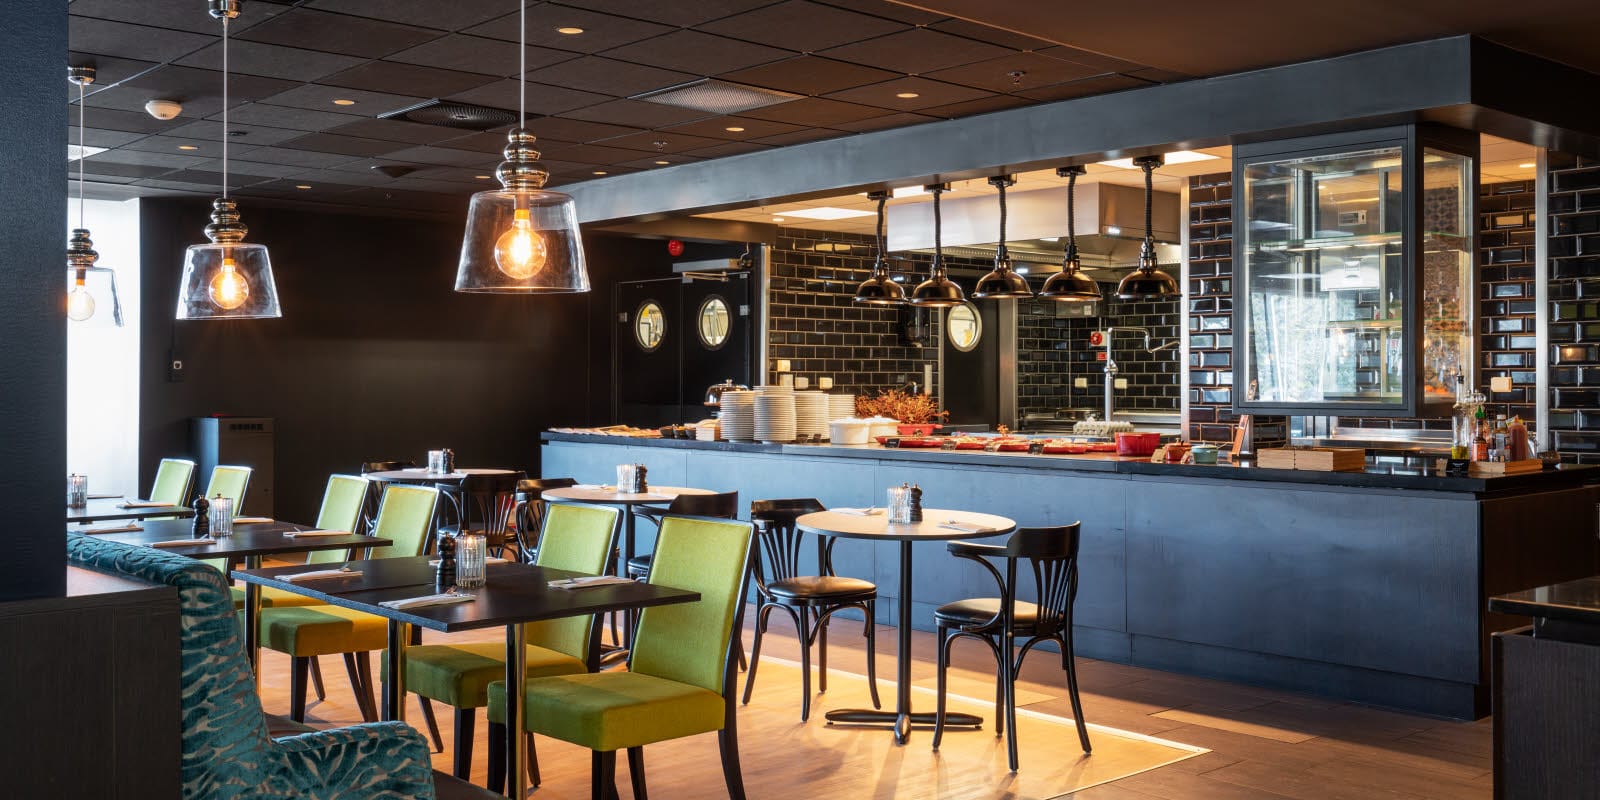 Restaurant med åpent kjøkken i bakgrunnen med industrilamper og bord og stoler i forgrunnen på Thon Hotel Triaden i Lørenskog